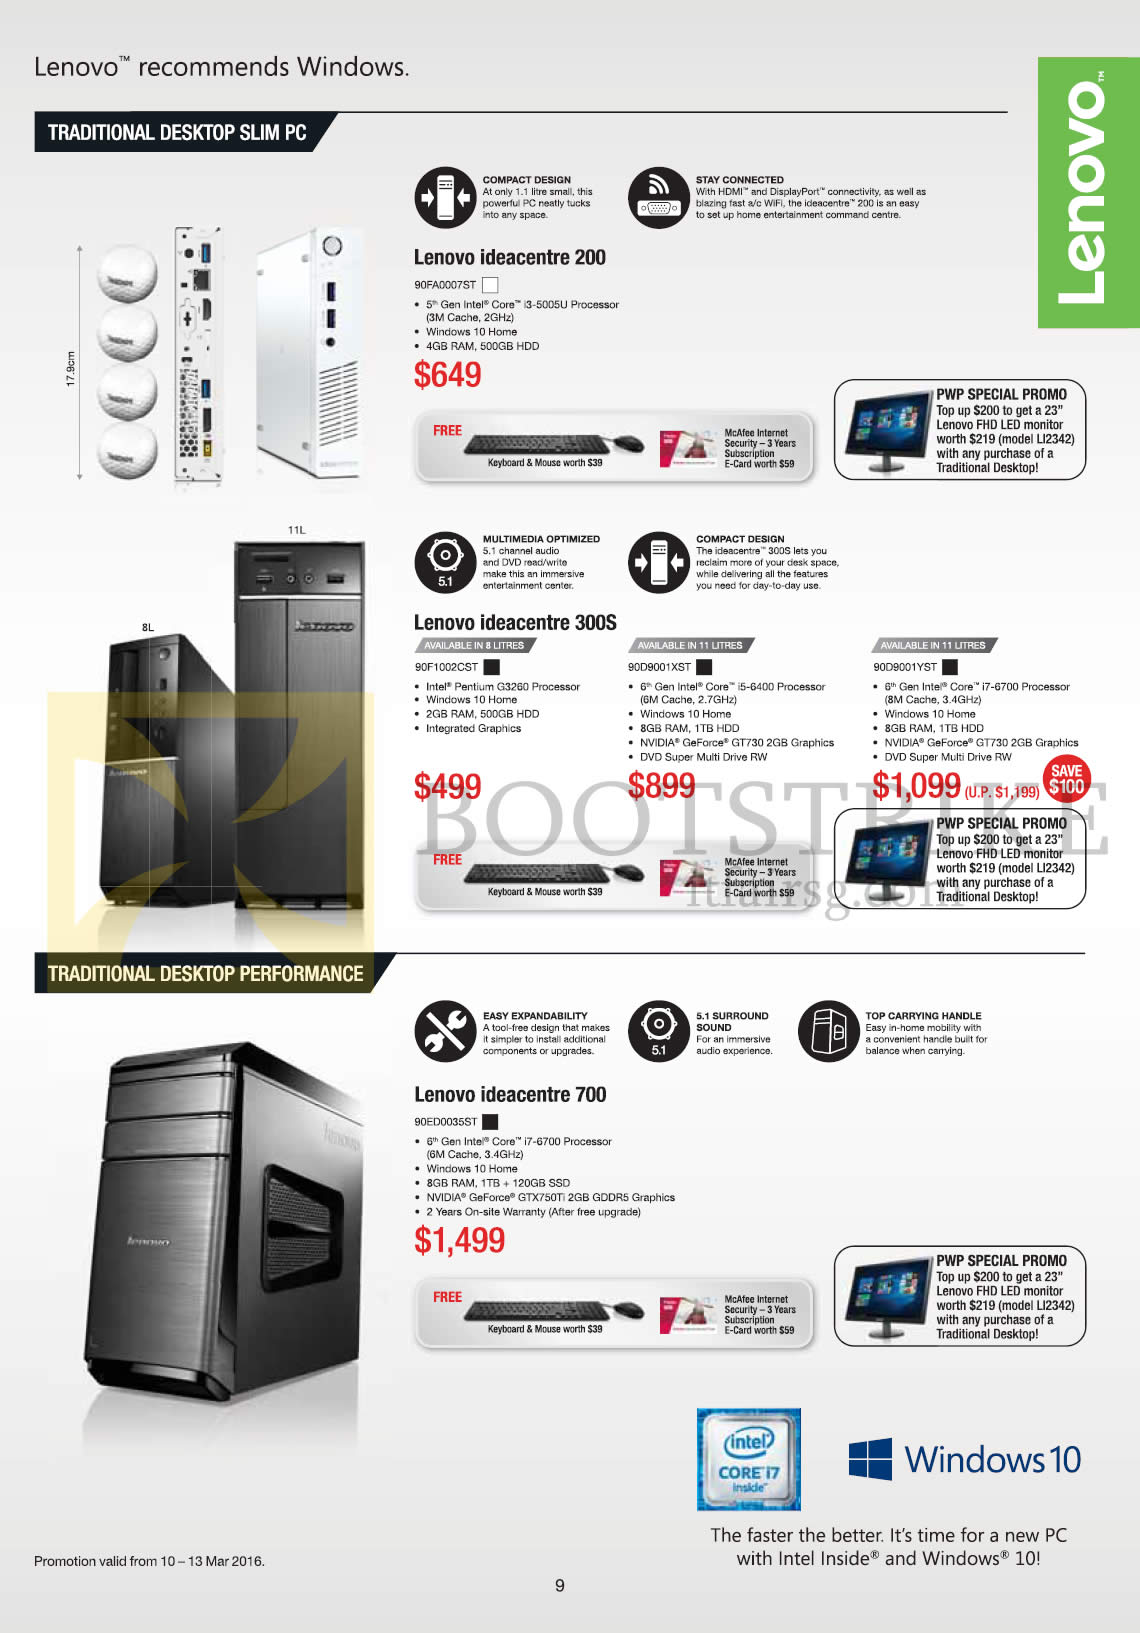 IT SHOW 2016 price list image brochure of Lenovo Desktop PCs Ideacentre 200, 300S, 700